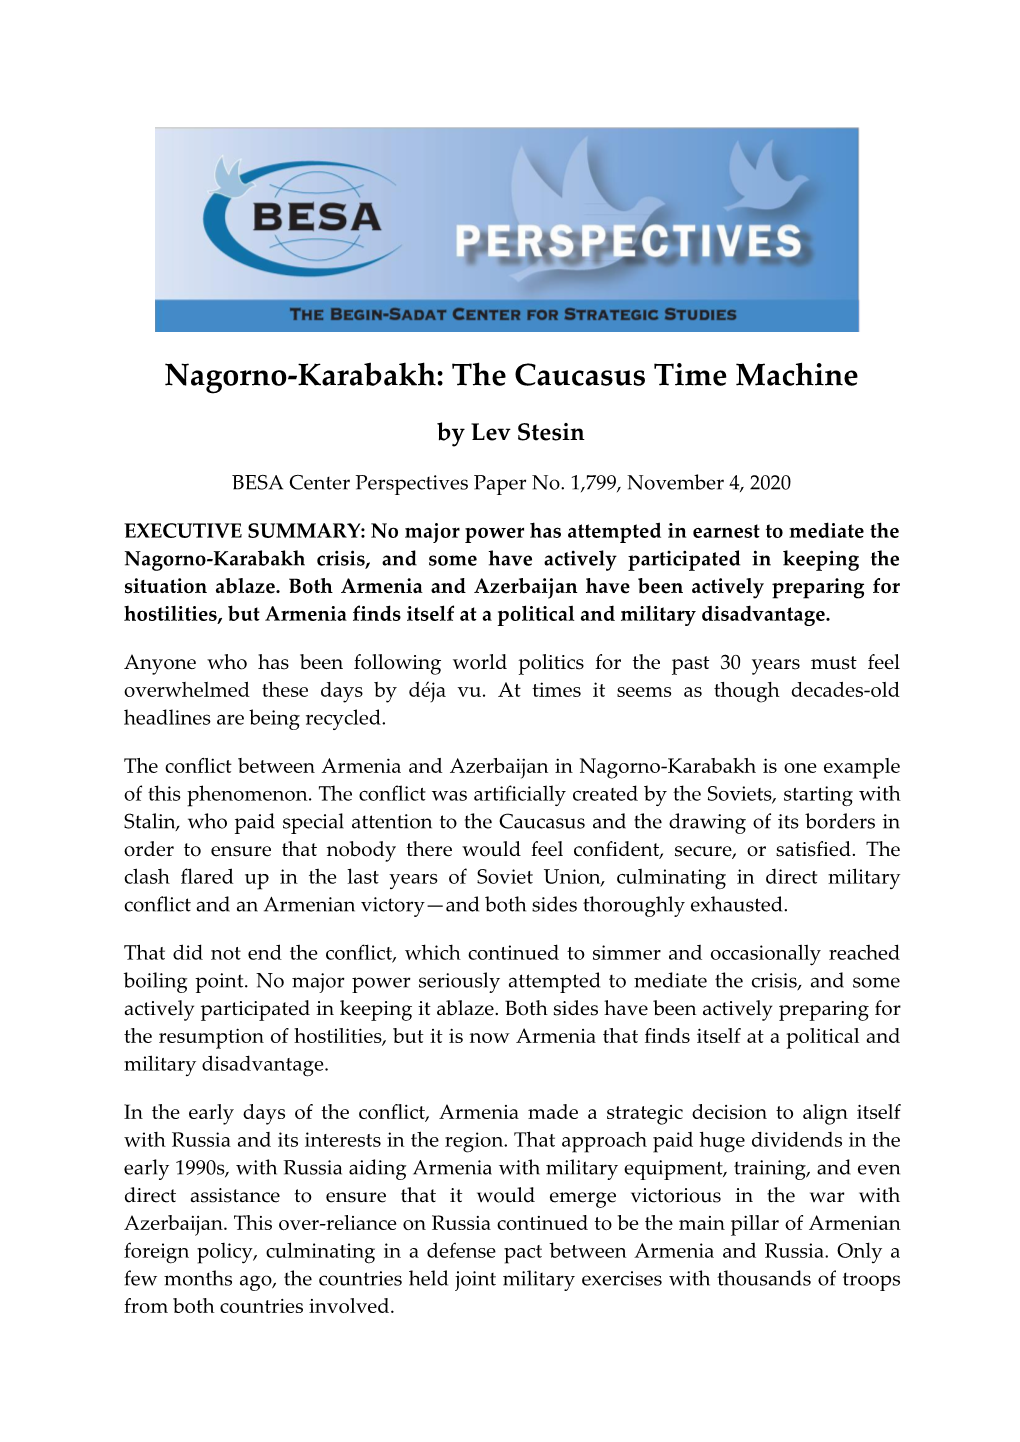 Nagorno-Karabakh: the Caucasus Time Machine